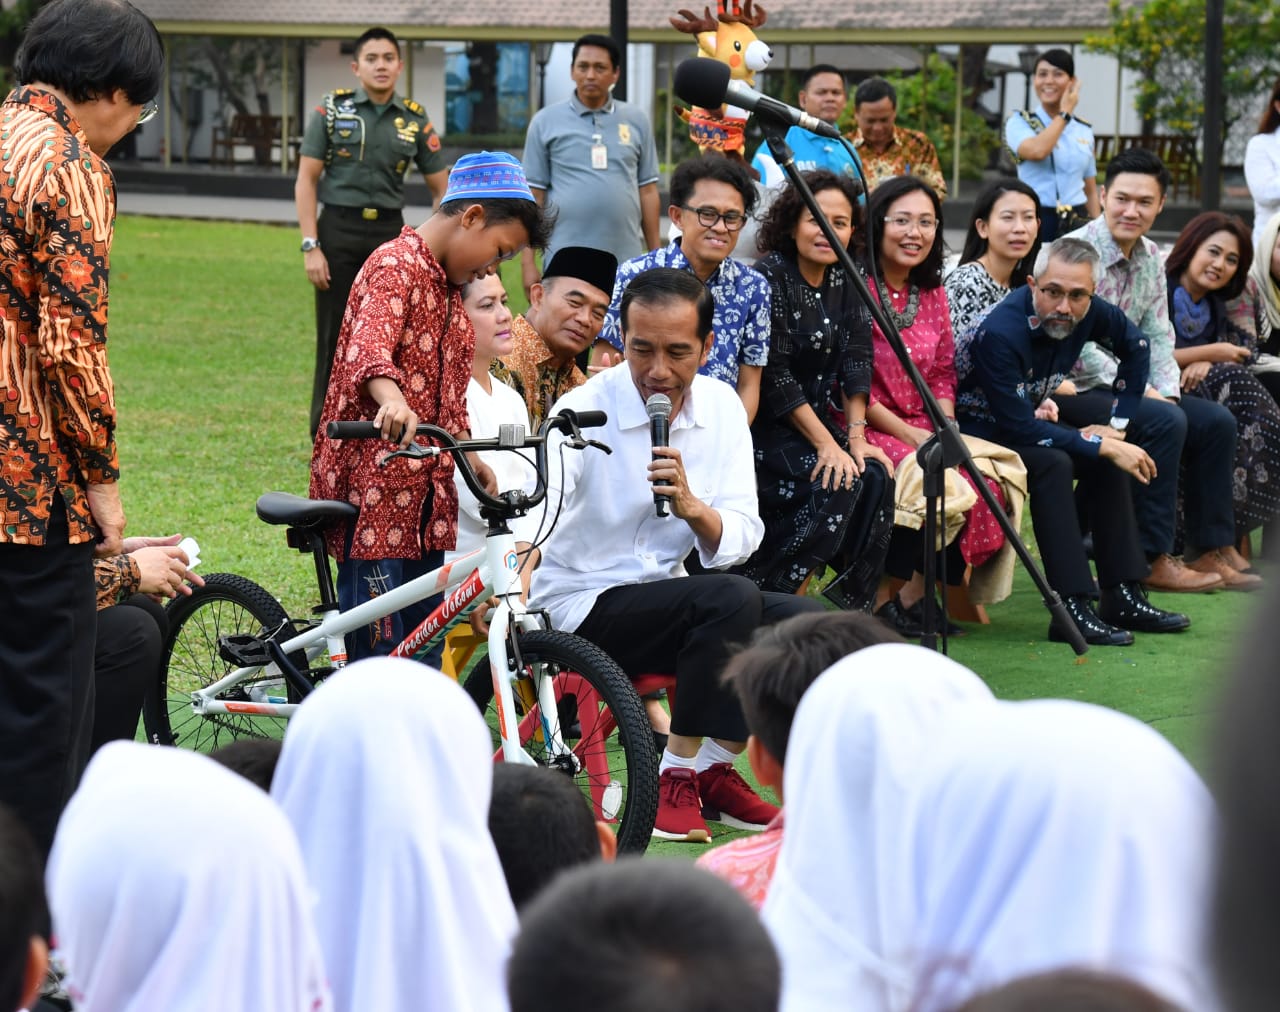 Presiden Jokowi memberikan hadiah kepada salah satu anak yang berhasil menjawab pertanyaannya . Salah satu anak yang bernama Akar berhasil menjawab dan mendapat hadiah boneka. (Foto: Divisi Pers Presiden)